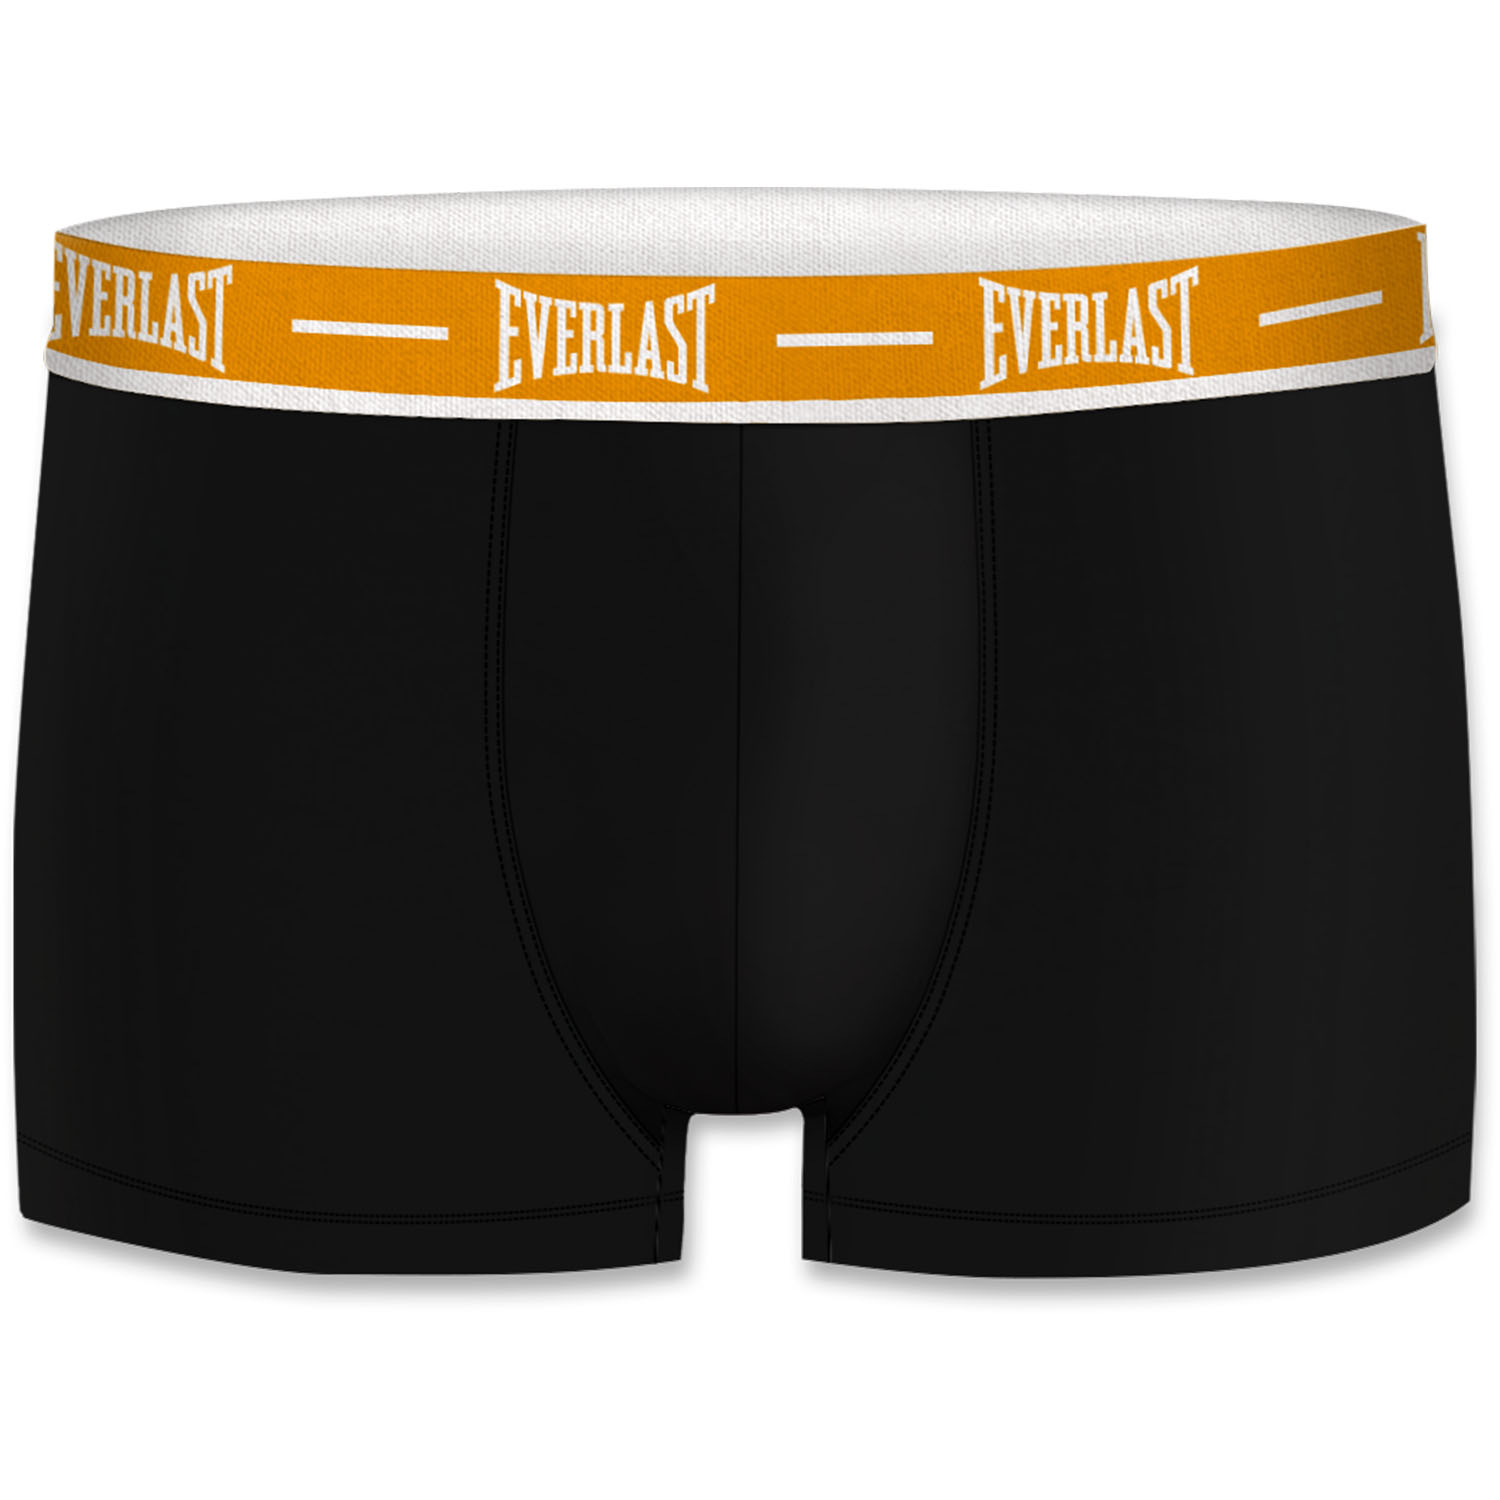 Everlast Boxershorts, AS2, schwarz-orange, XXL